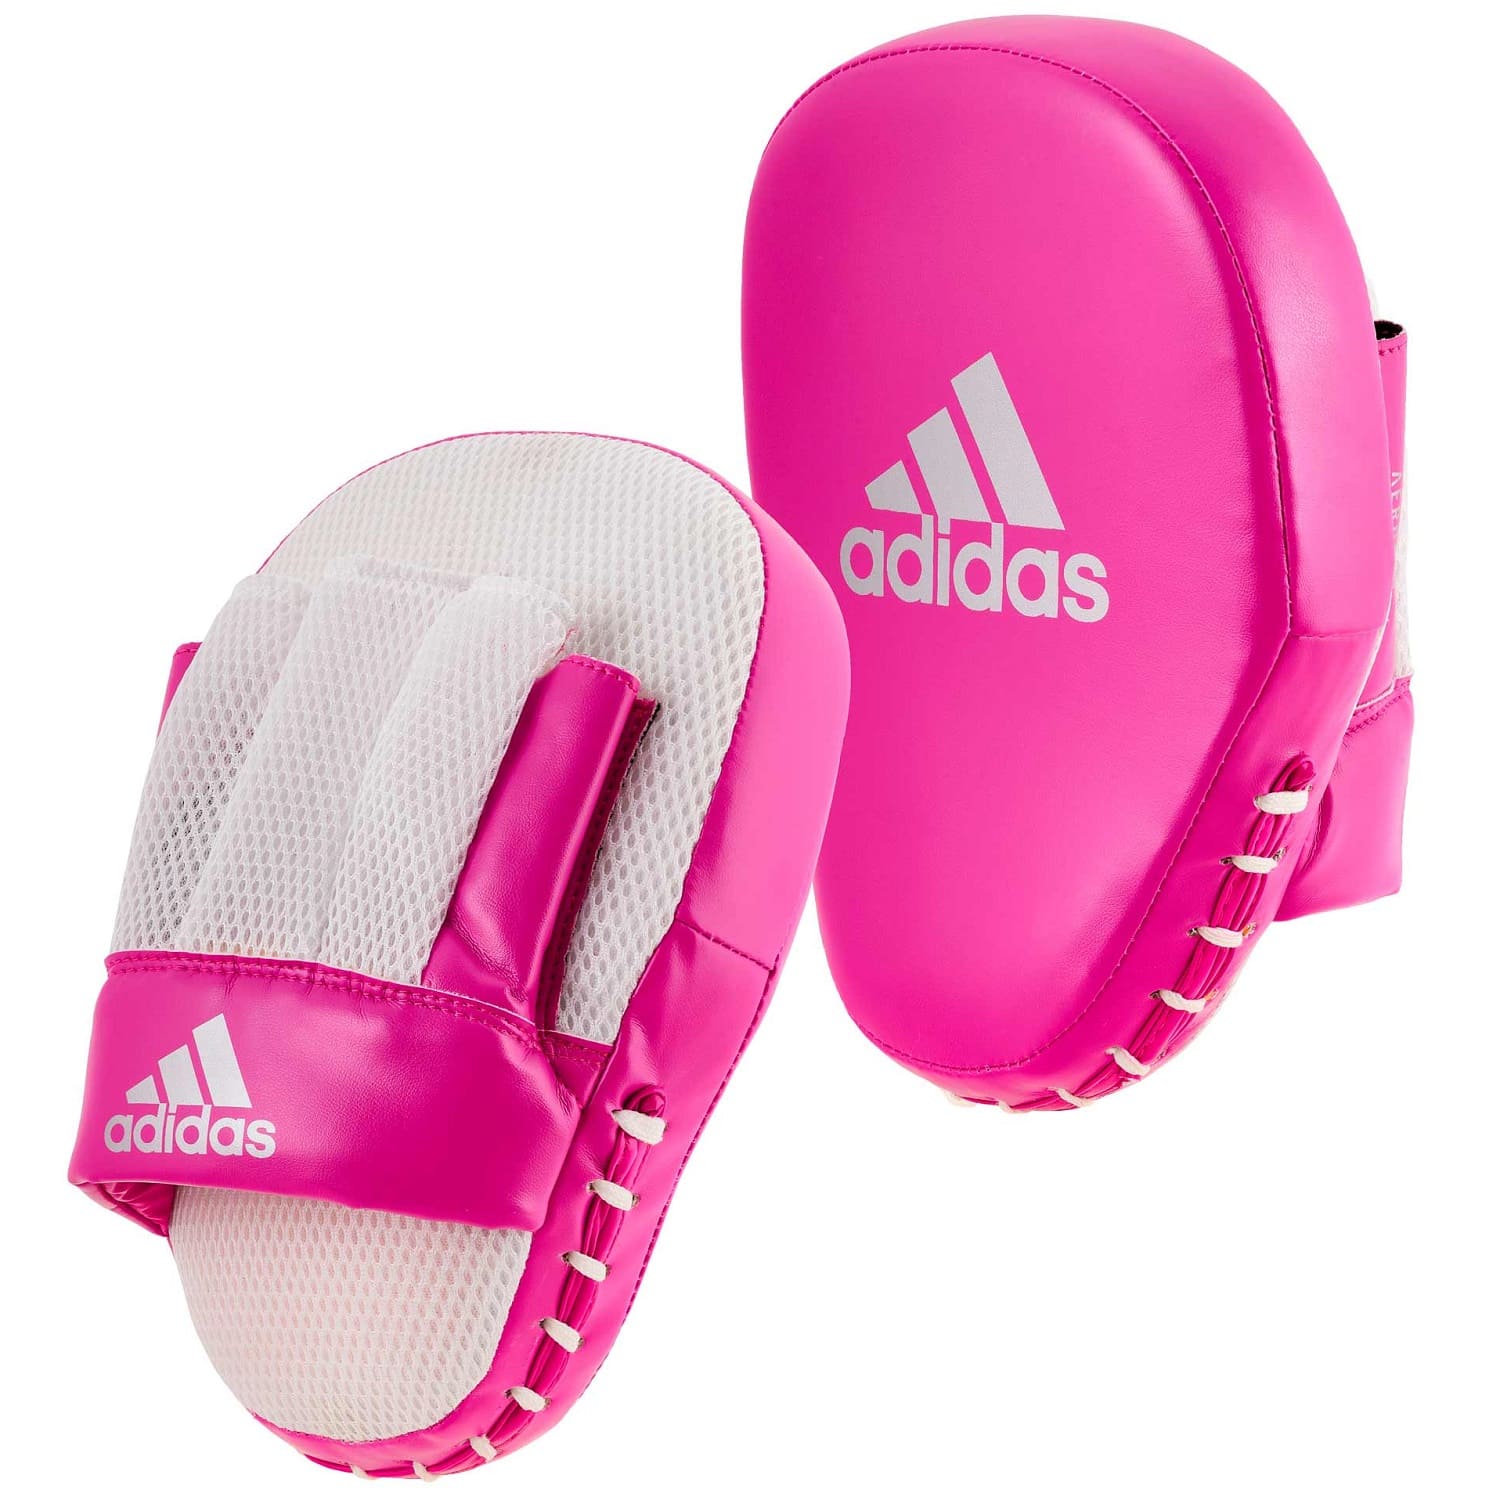 Adidas Handpratzen Speed Coach Pink/Silber Online kaufen ✓ | EMPAROR